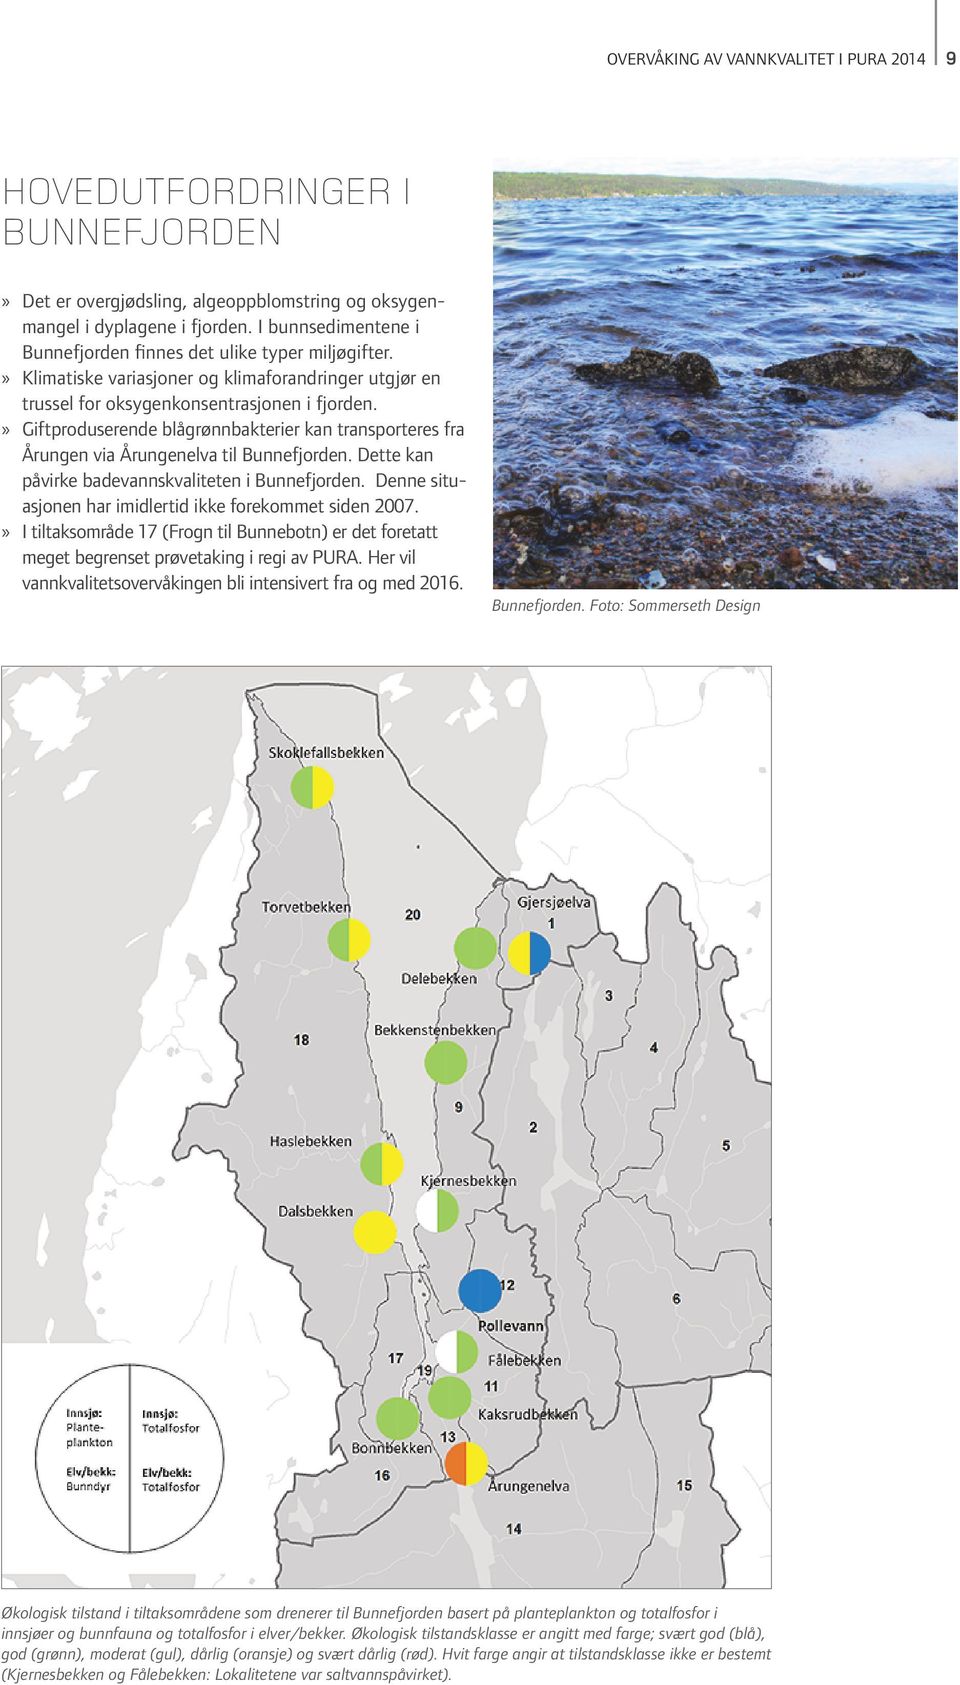 Giftproduserende blågrønnbakterier kan transporteres fra Årungen via Årungenelva til Bunnefjorden. Dette kan påvirke badevannskvaliteten i Bunnefjorden.